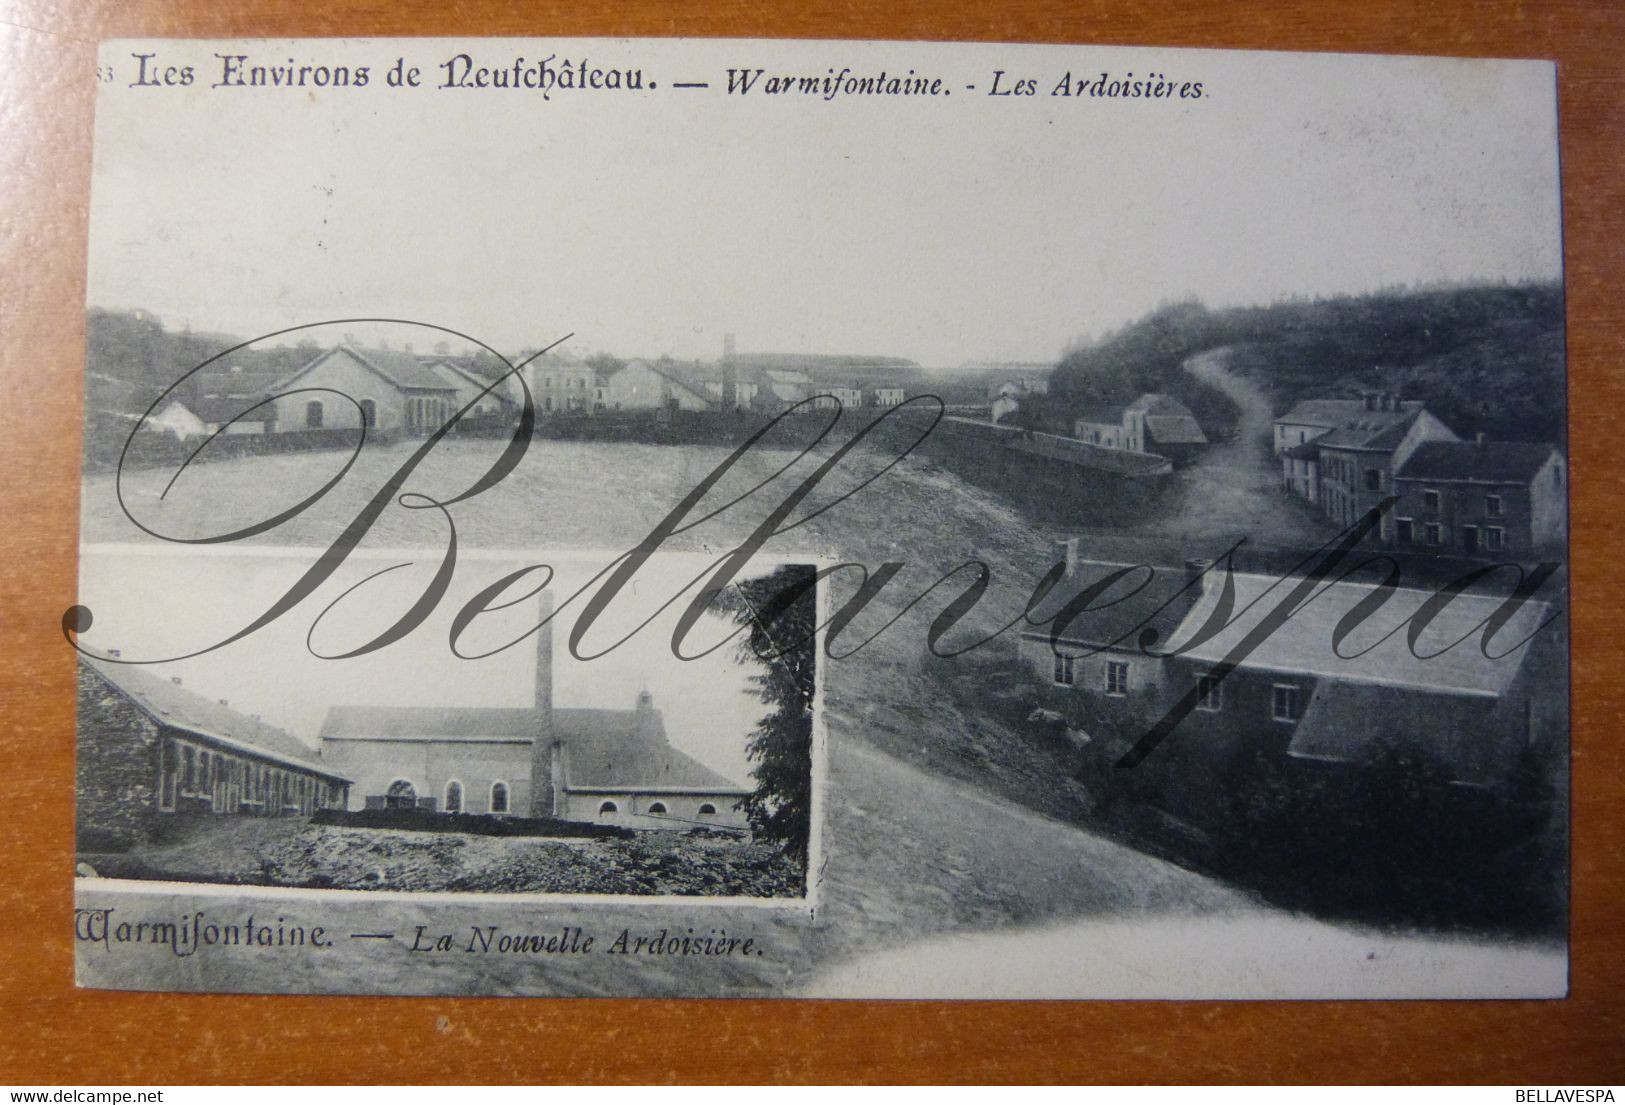 Warmifontaine. Les Ardoisières. La Nouvelle ..n°83-1909 - Neufchâteau